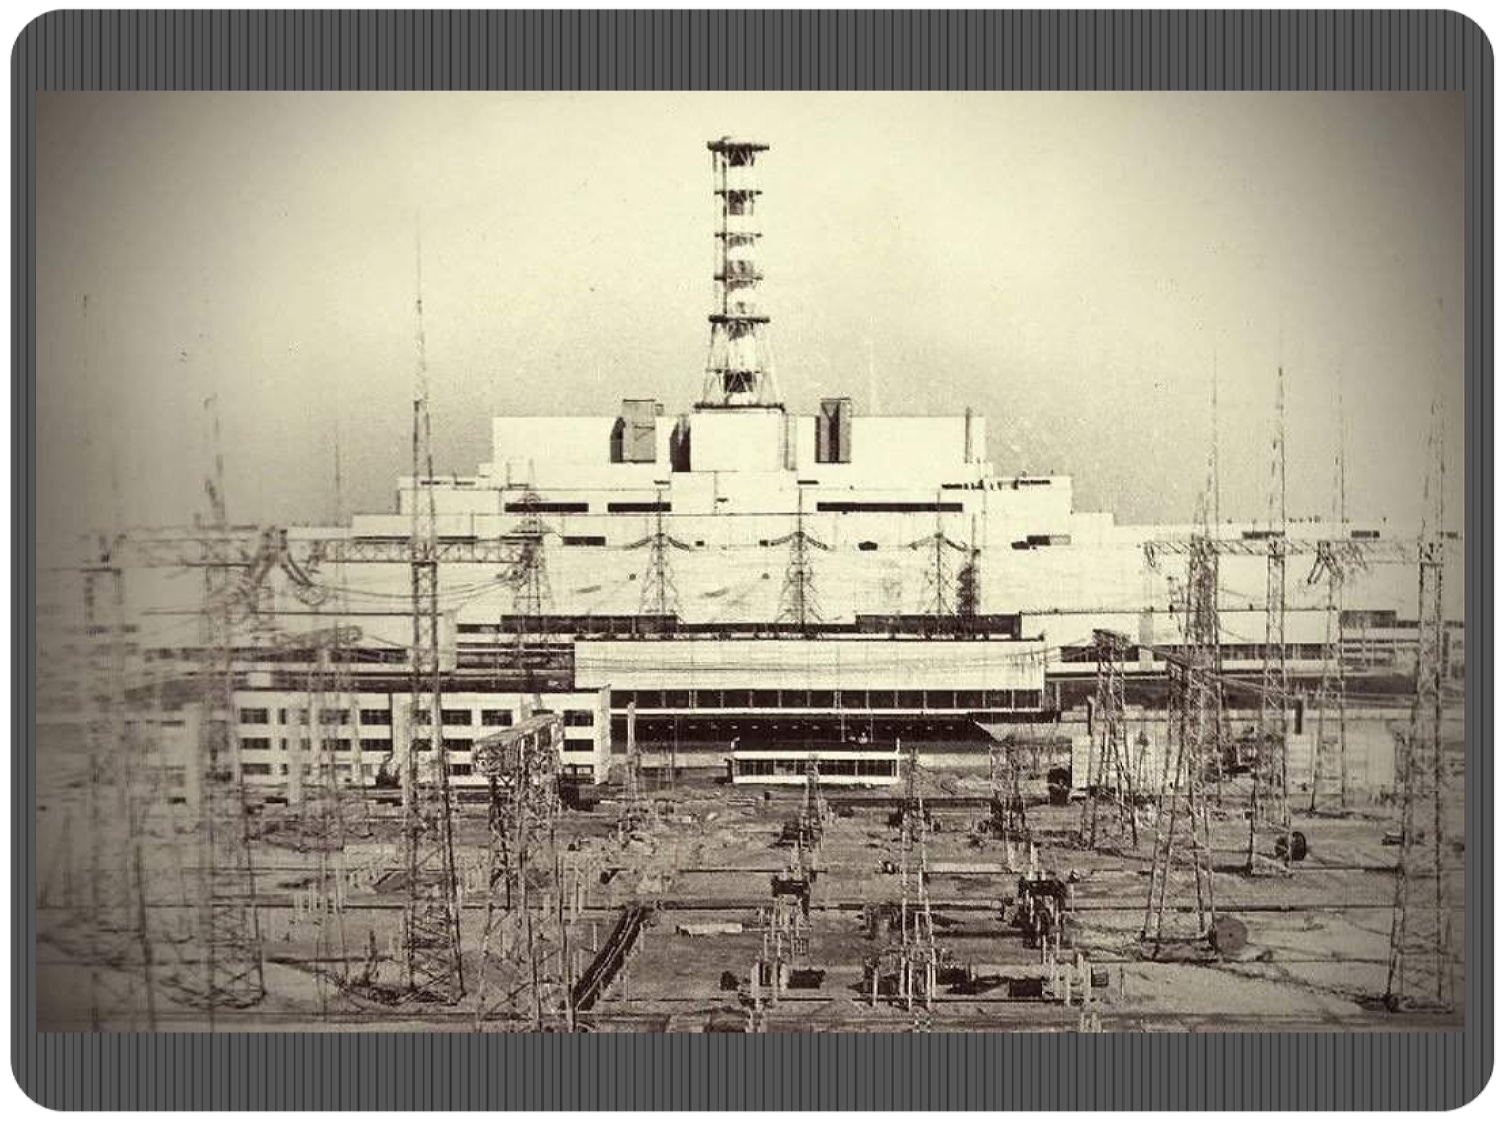 Чернобыль перерождение. Атомная электростанция Чернобыль 4 энергоблок. Чернобыль до аварии ЧАЭС. Чернобыльская АЭС 1986 реактор. Припять до катастрофы на Чернобыльской АЭС.